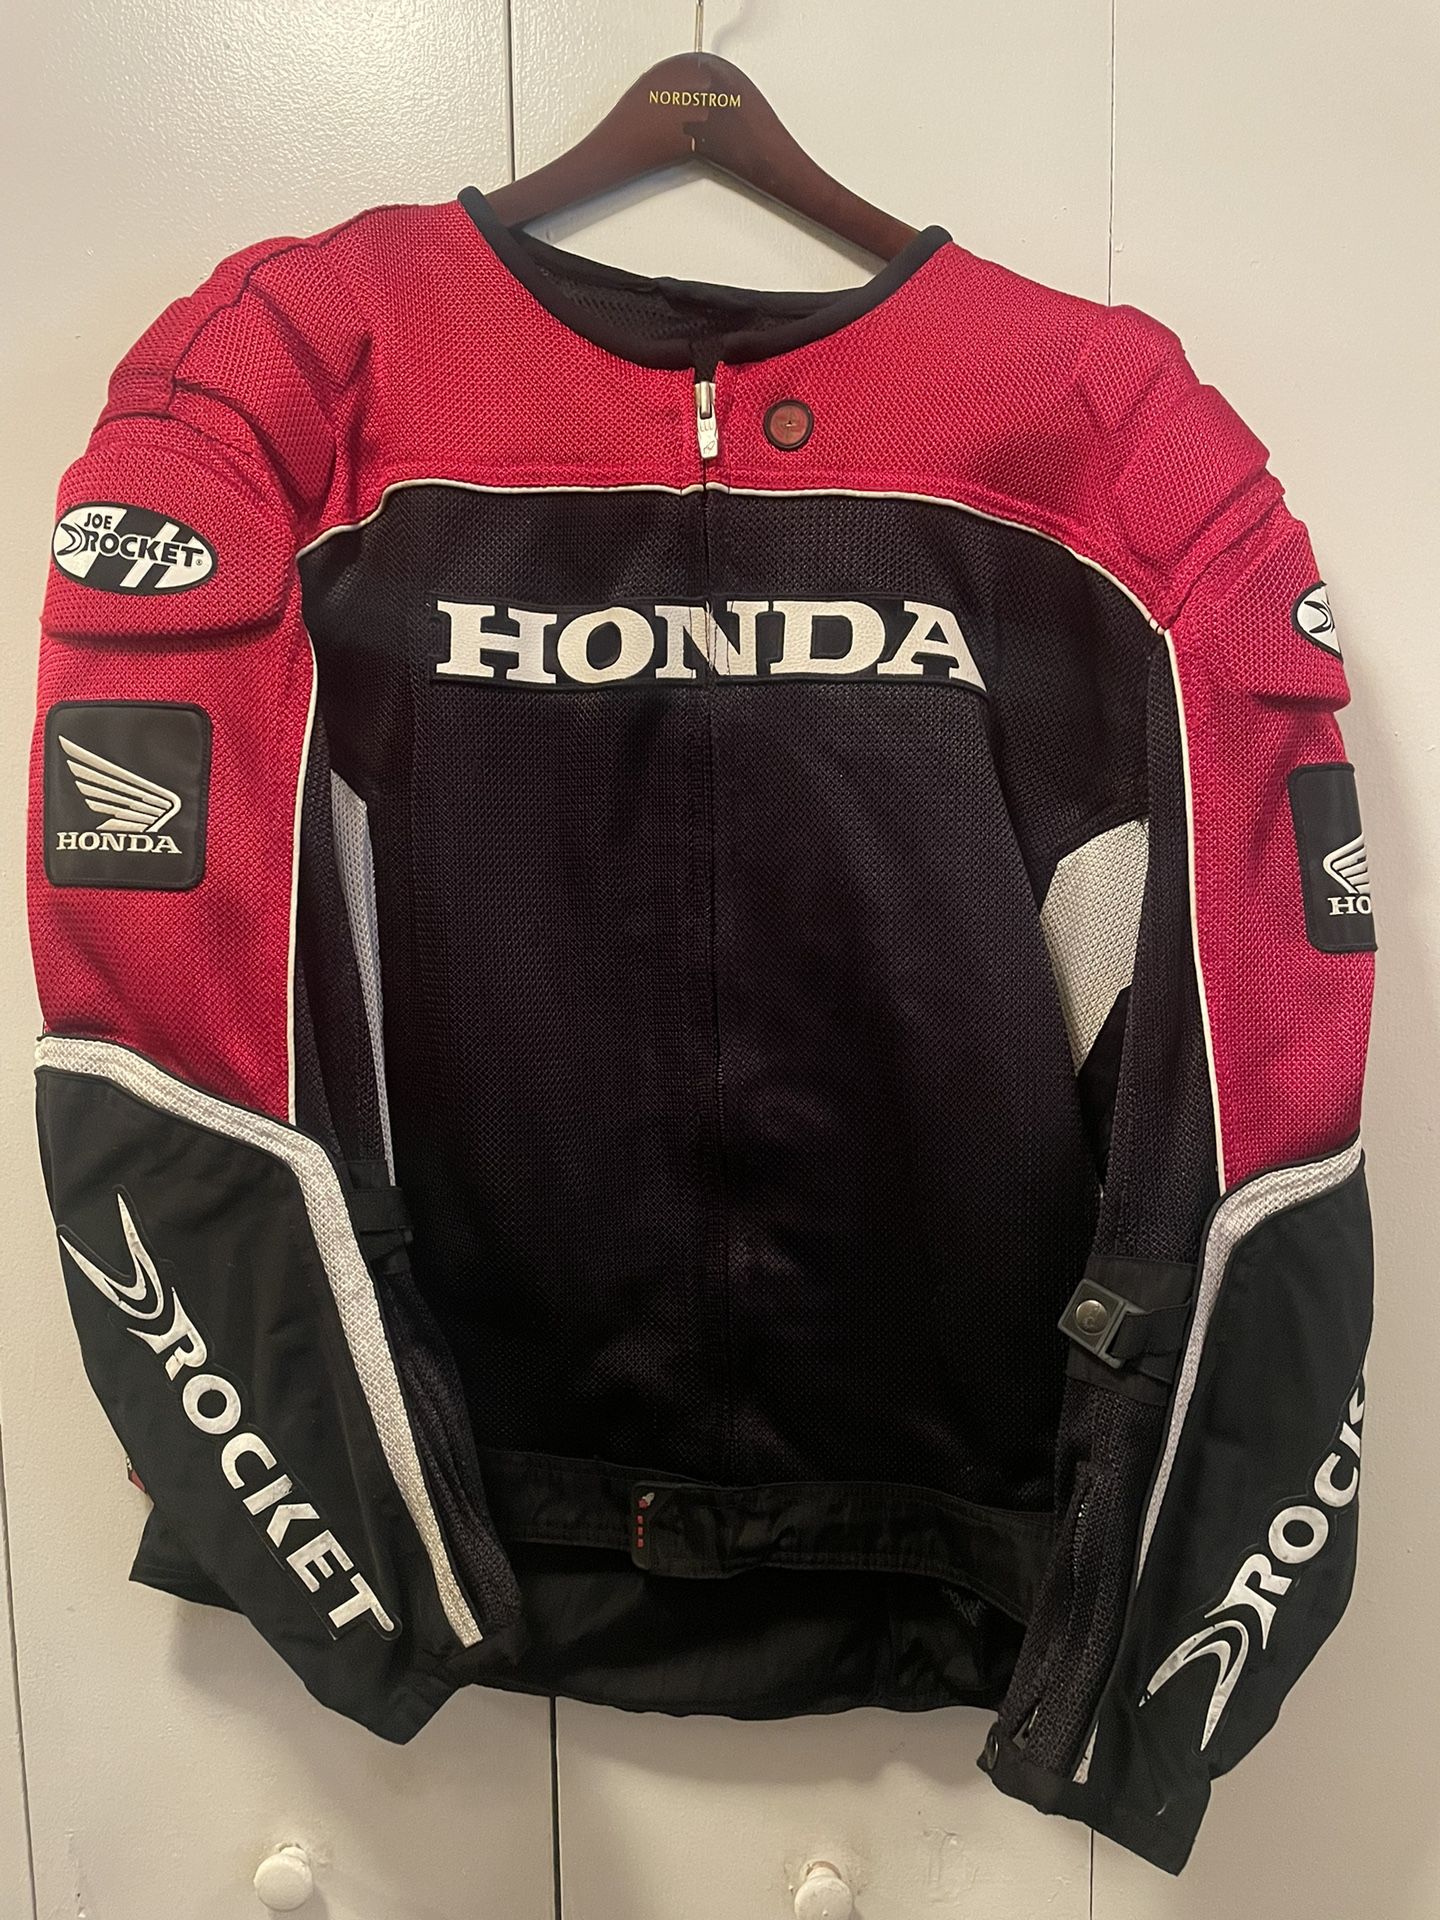 Honda Jacket And Alpinestar Gloves